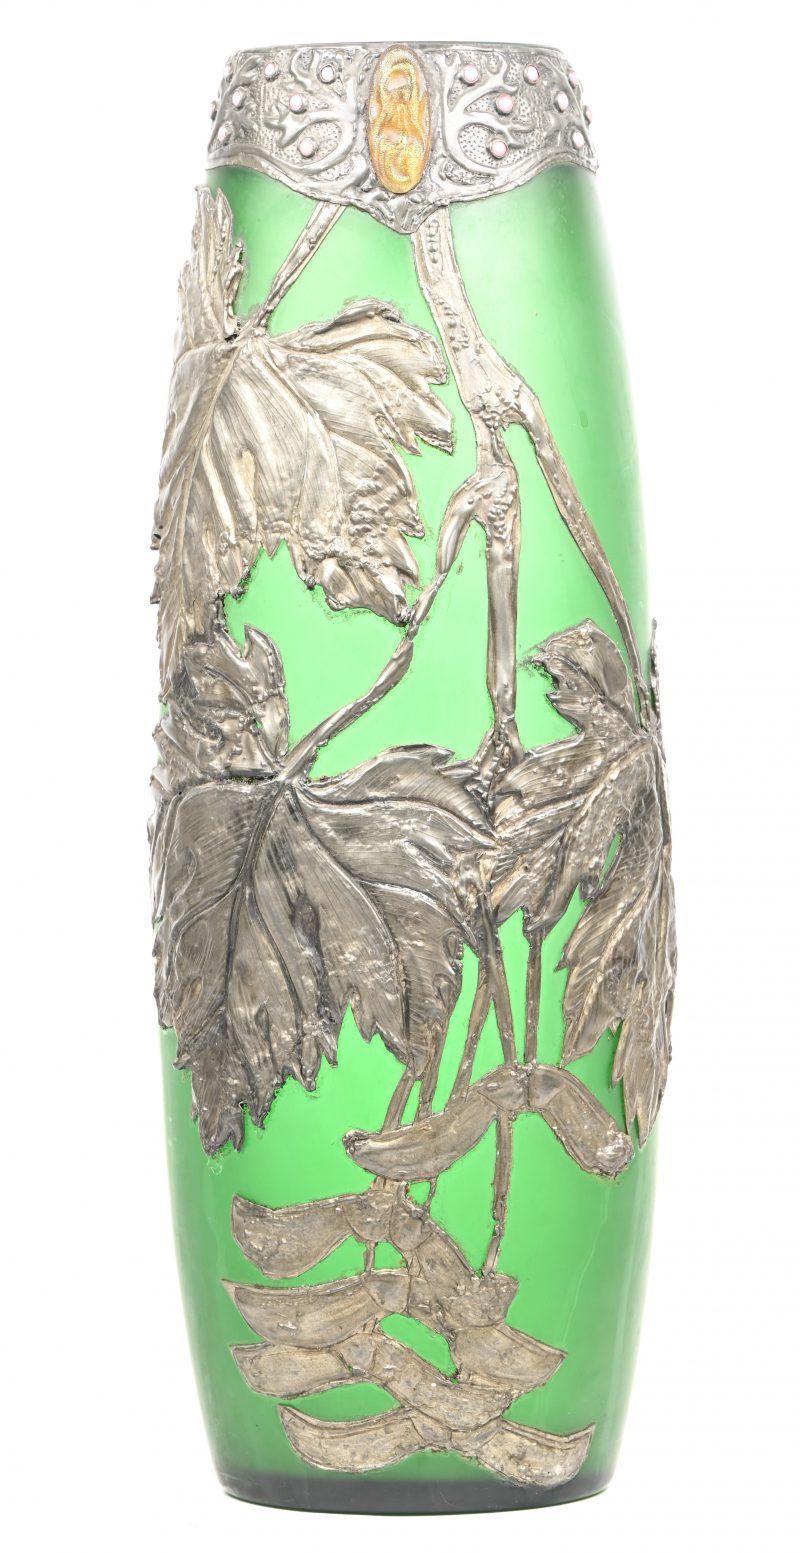 Een groen glazen Jugendstil vaas met floraal reliëf decor. Klein schilfertje aan bovenrand.